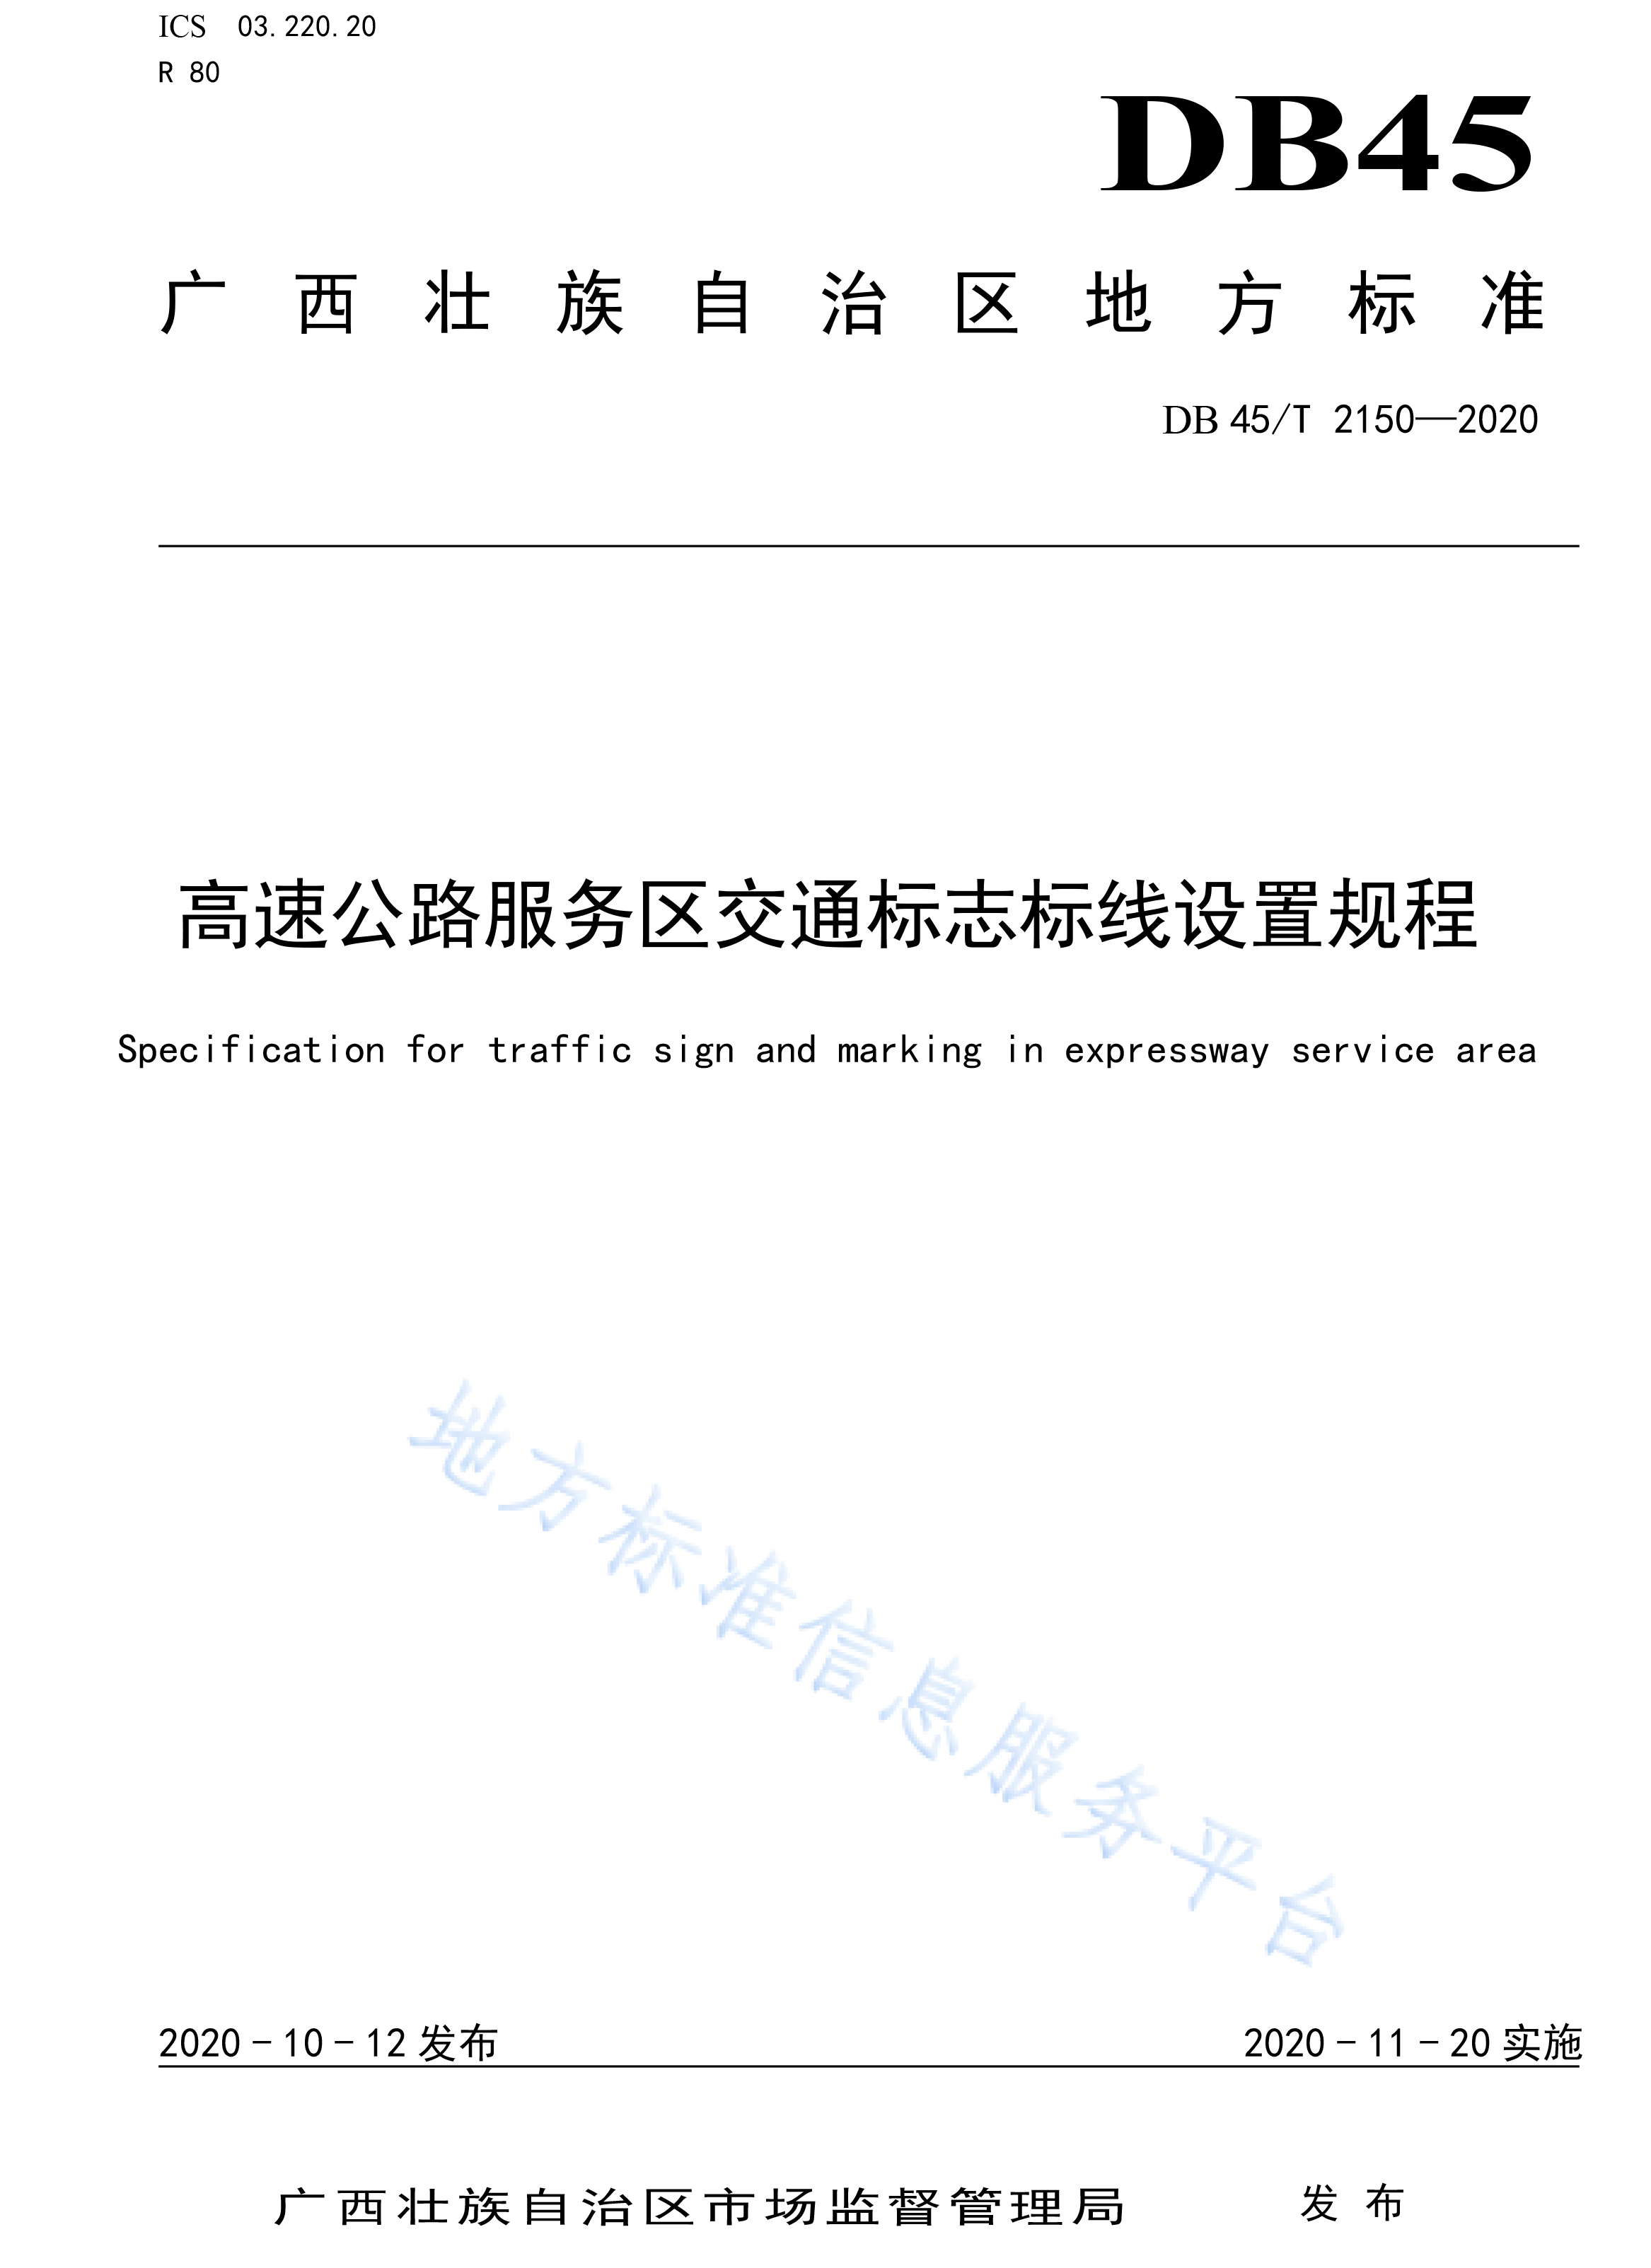 广西DB 45T 2150—2020高速公路服务区交通标志标线设置规程-1.jpg